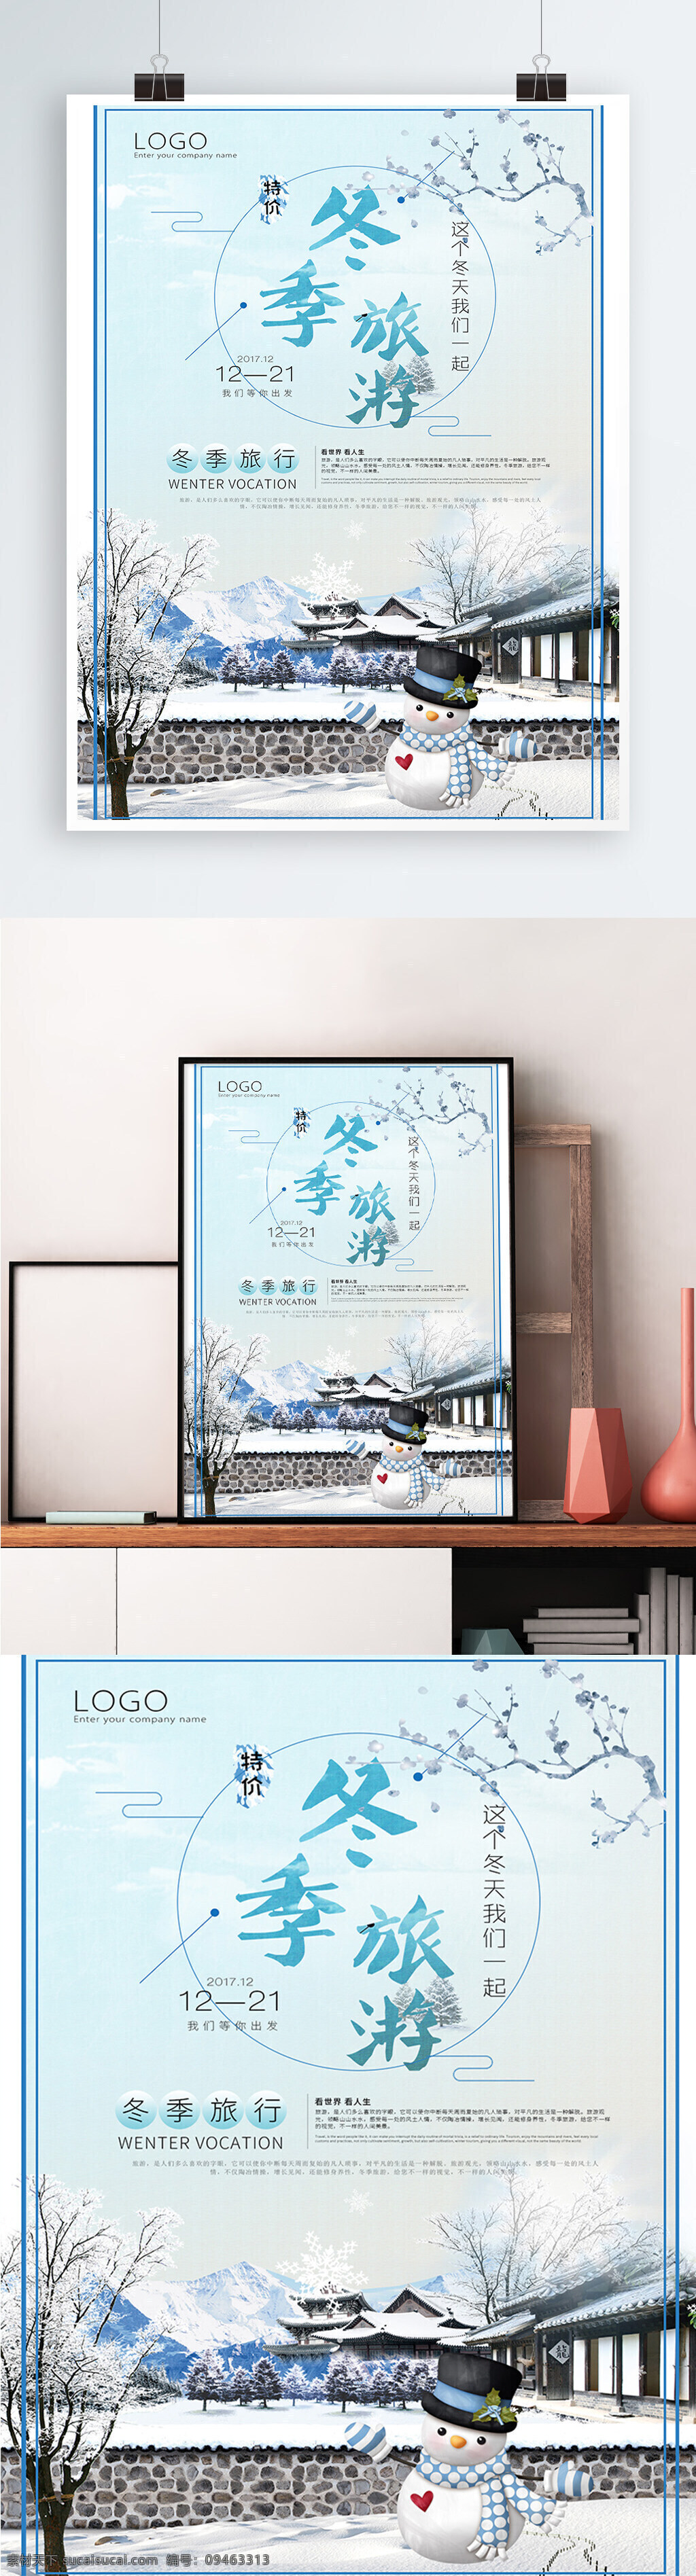 冬季旅游海报 冬季旅行 冬至海报 平面广告 平面设计 看世界 我们一起 宣传广告 雪人 白色